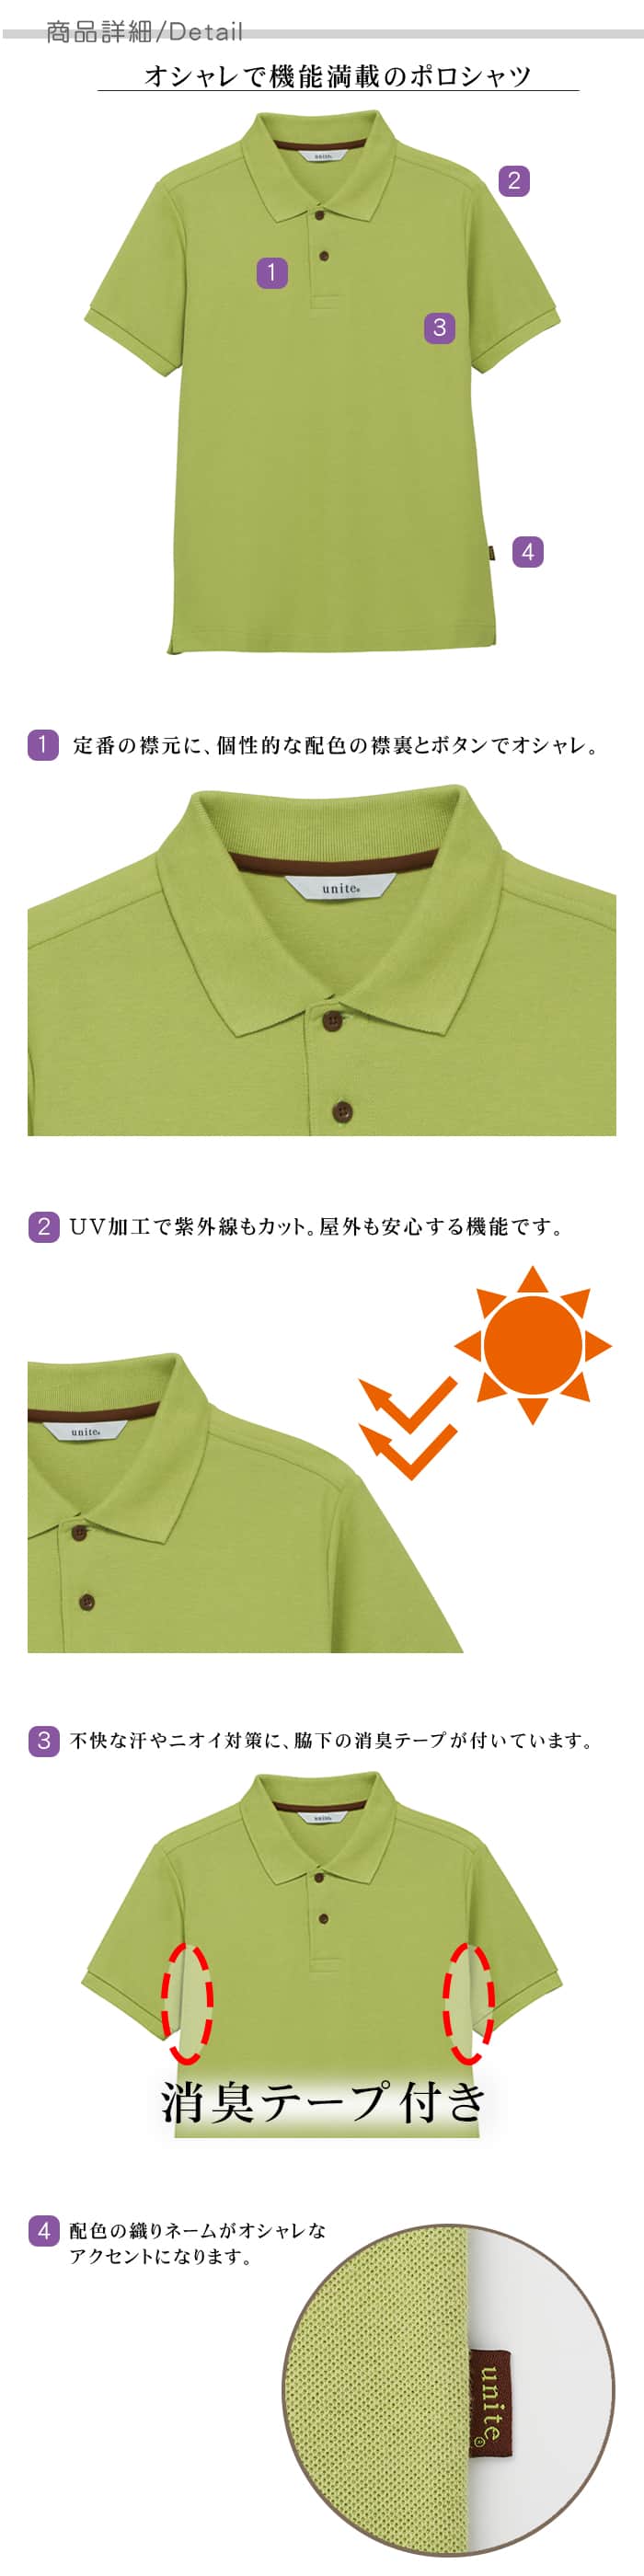 半袖ポロシャツ 配色ボタンがオシャレ UVカット機能付き全7色 食品販売 作業用制服[男女兼用] 商品詳細説明